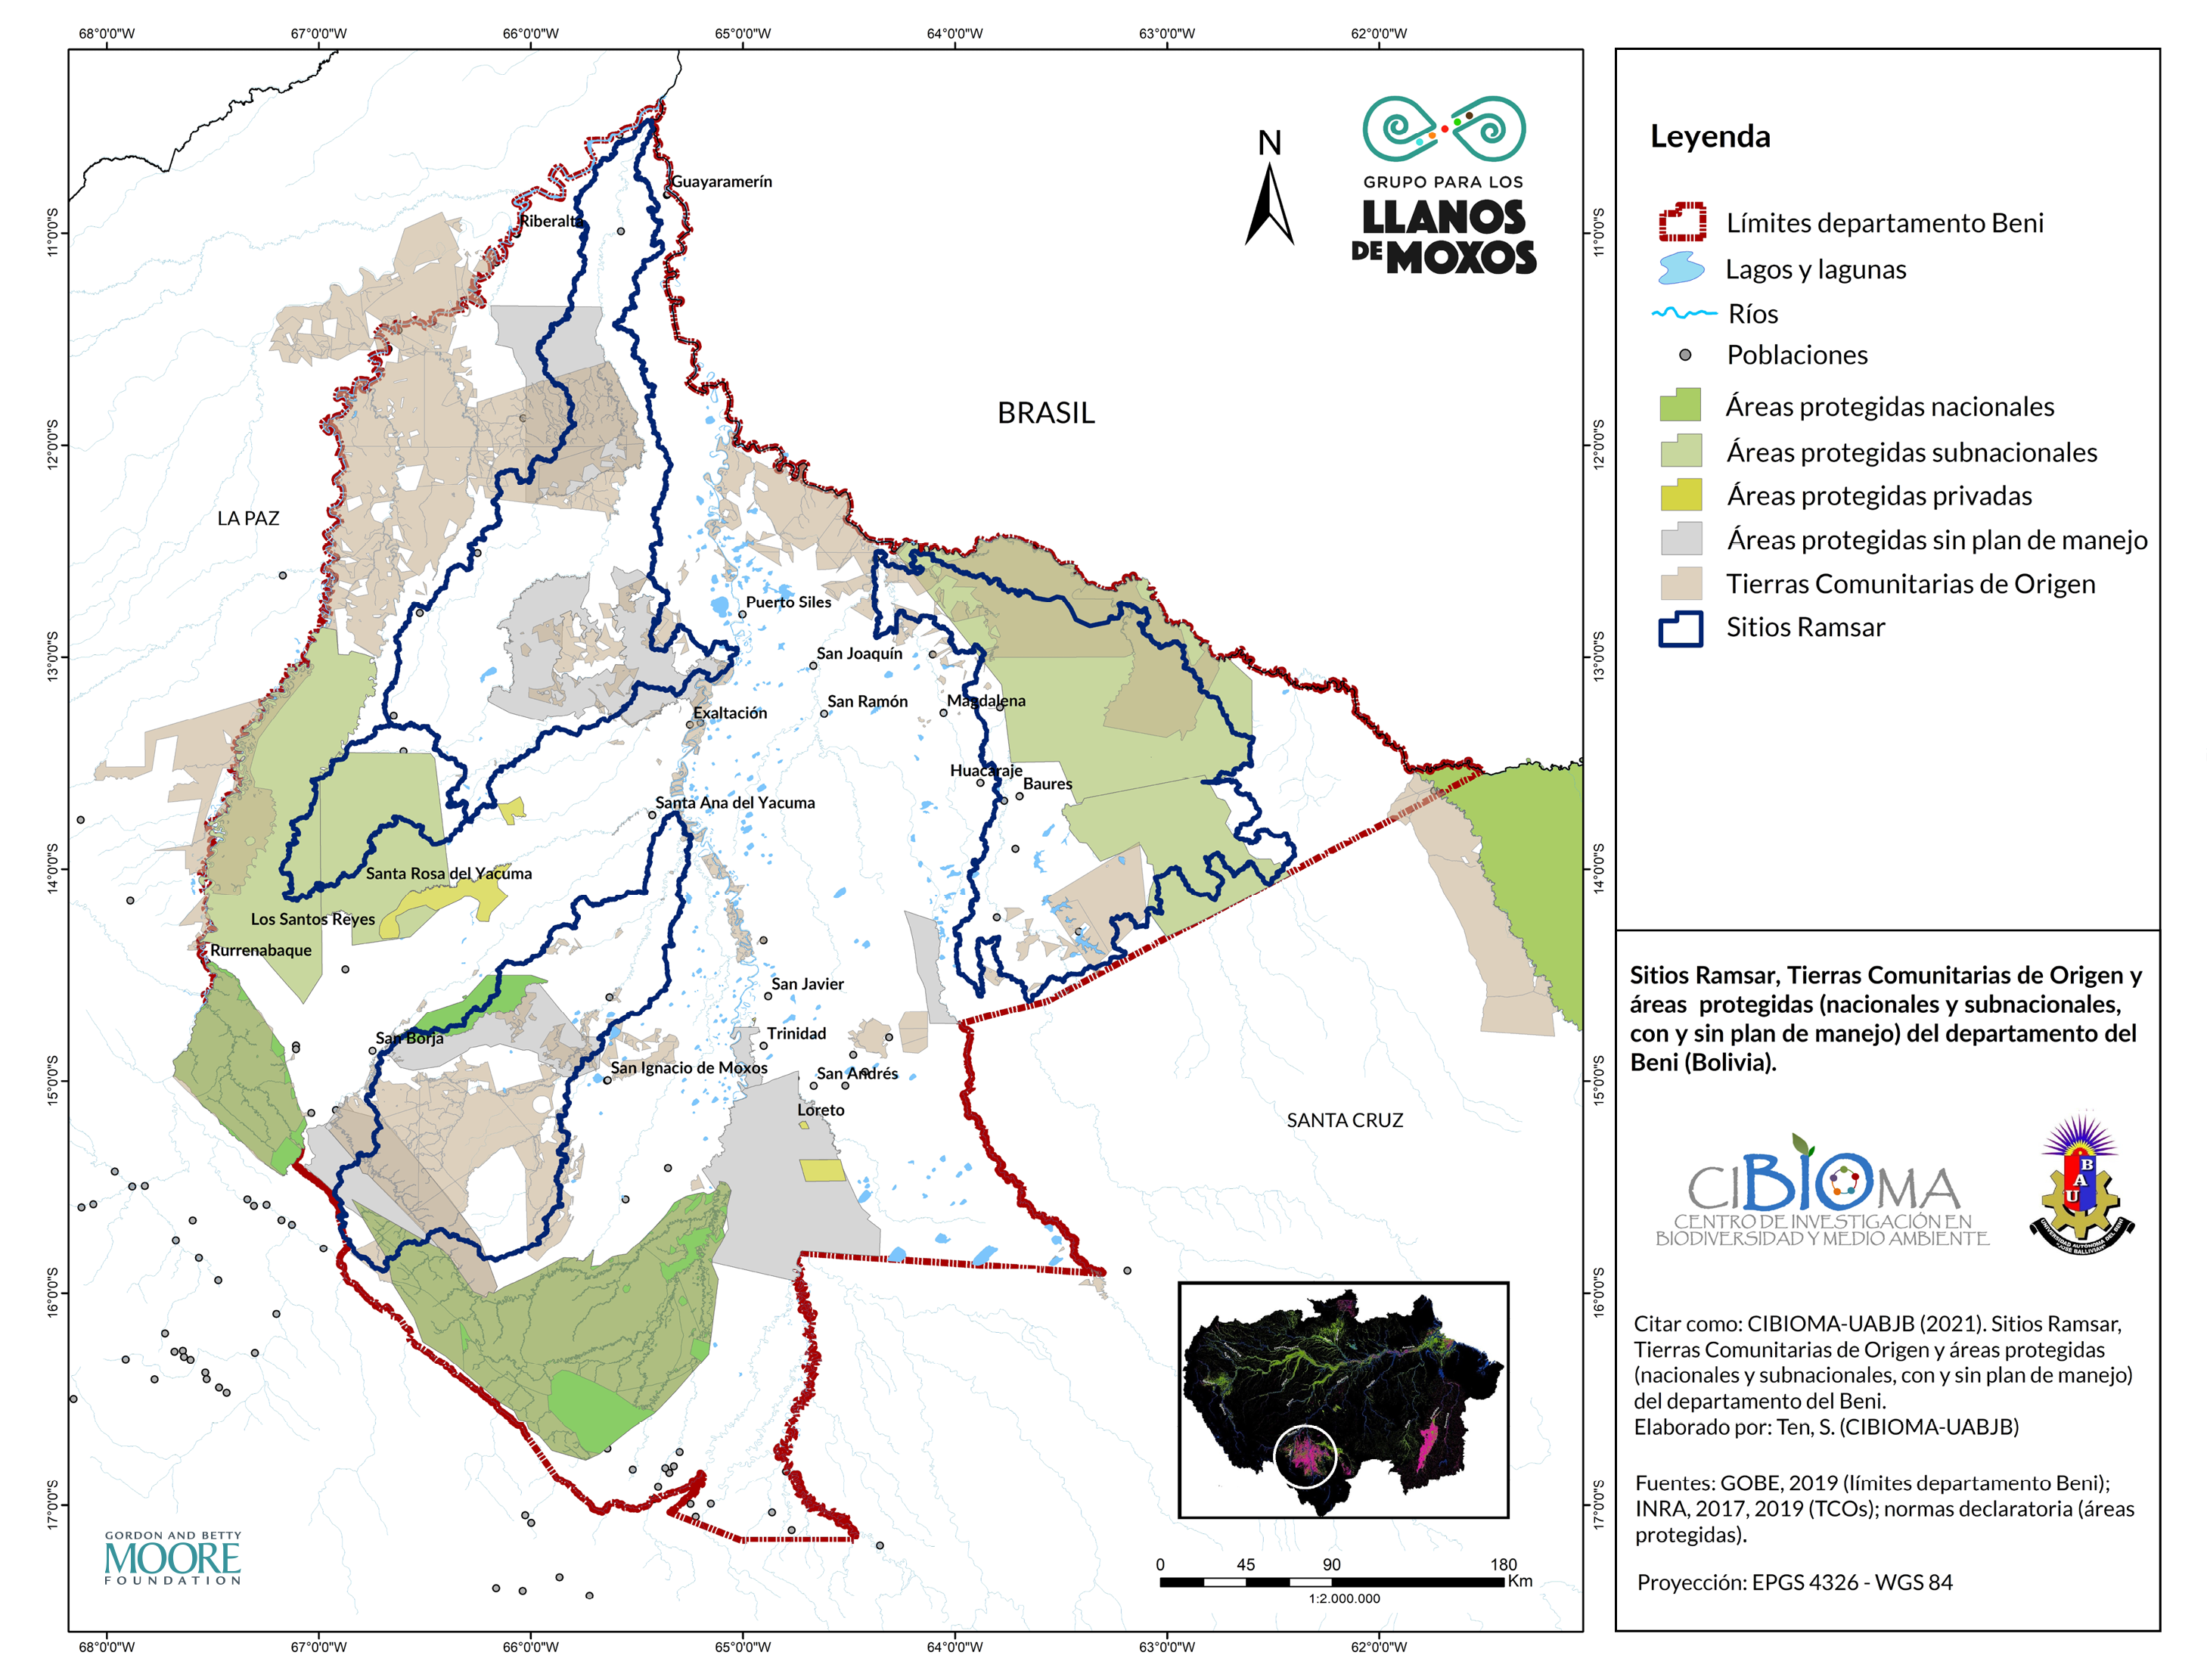 Áreas protegidas nacionales, departamentales, municipales y privadas del dpto. Beni